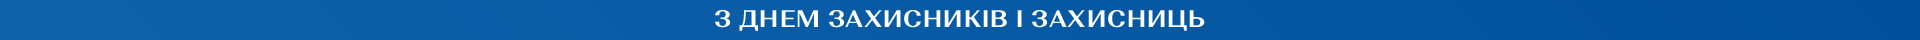 https://img.gepur.com/imgp/banner/0/tiny-banner/en/large/1696153533_1920x40-ukr-png.png0